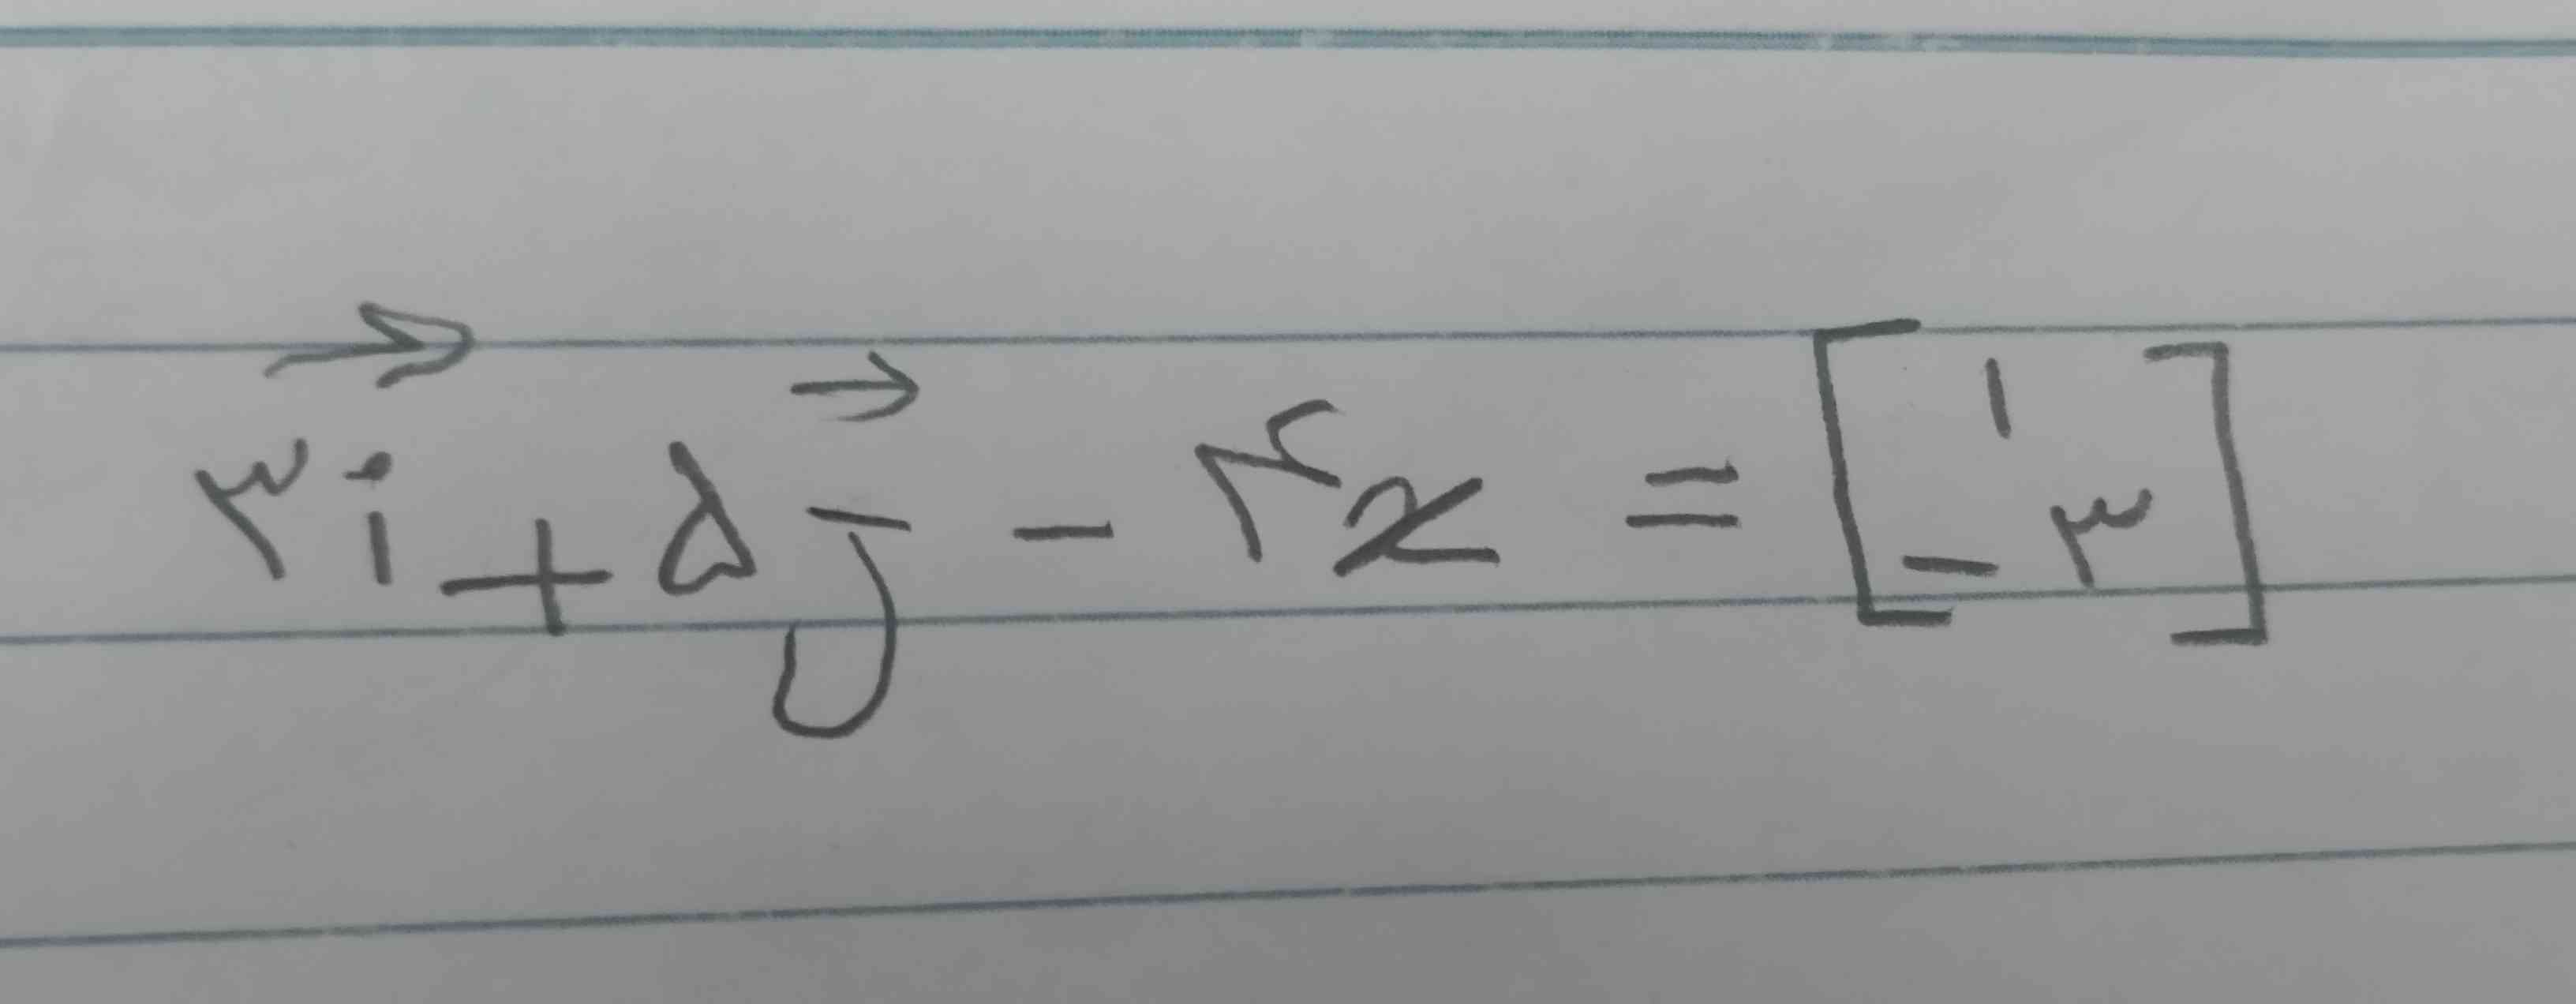 معادله مختصاتی زیر را حل کنید
لطفاً بفرستید تاج میدم